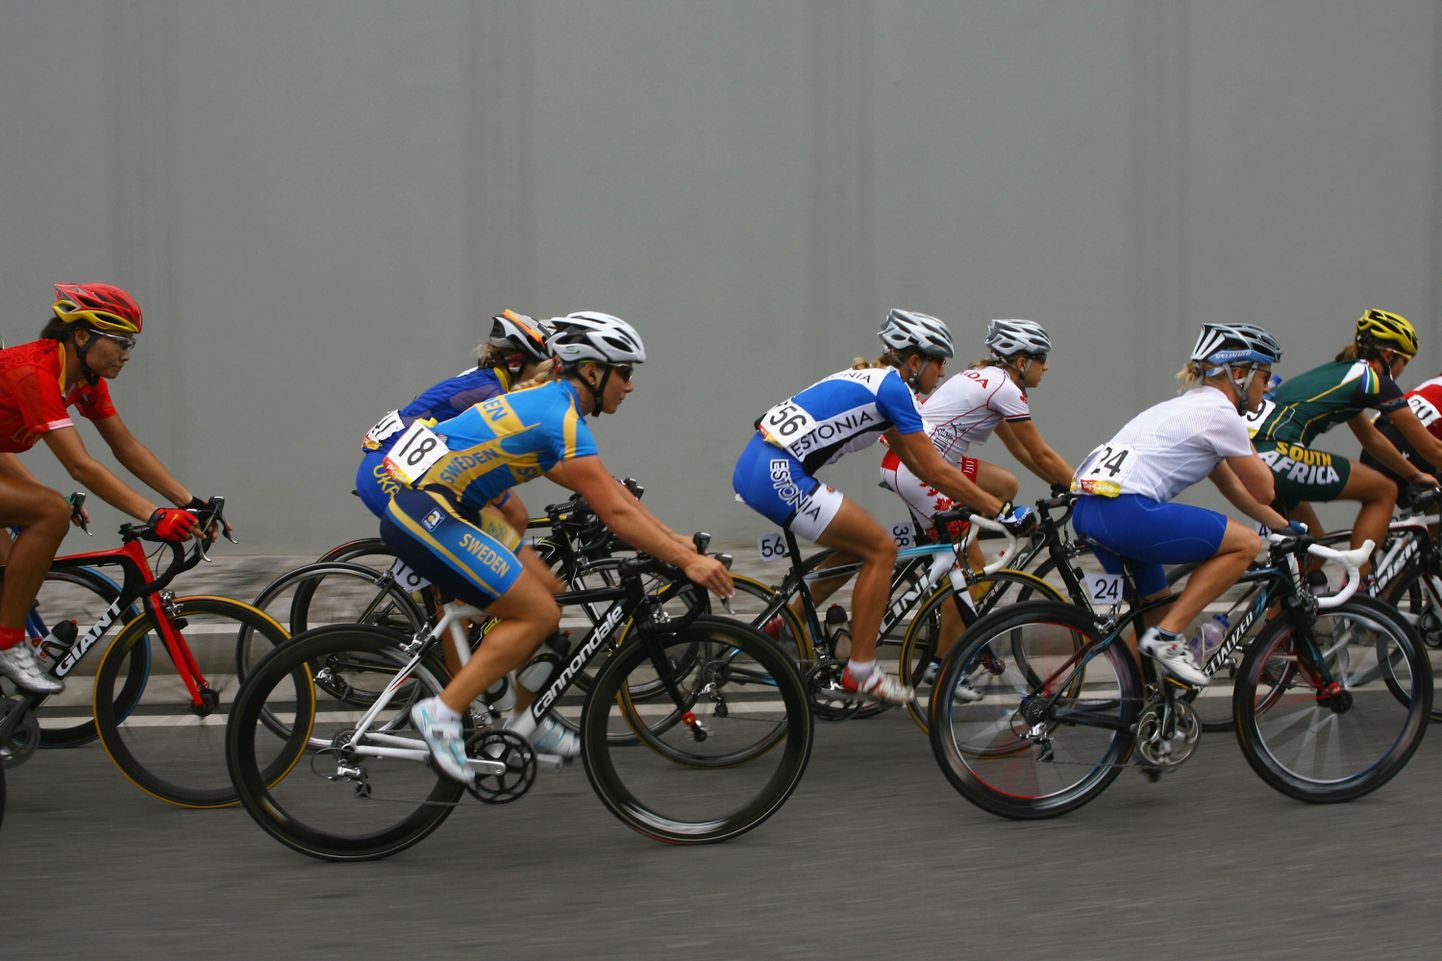 Naiste jalgrattavõistlus